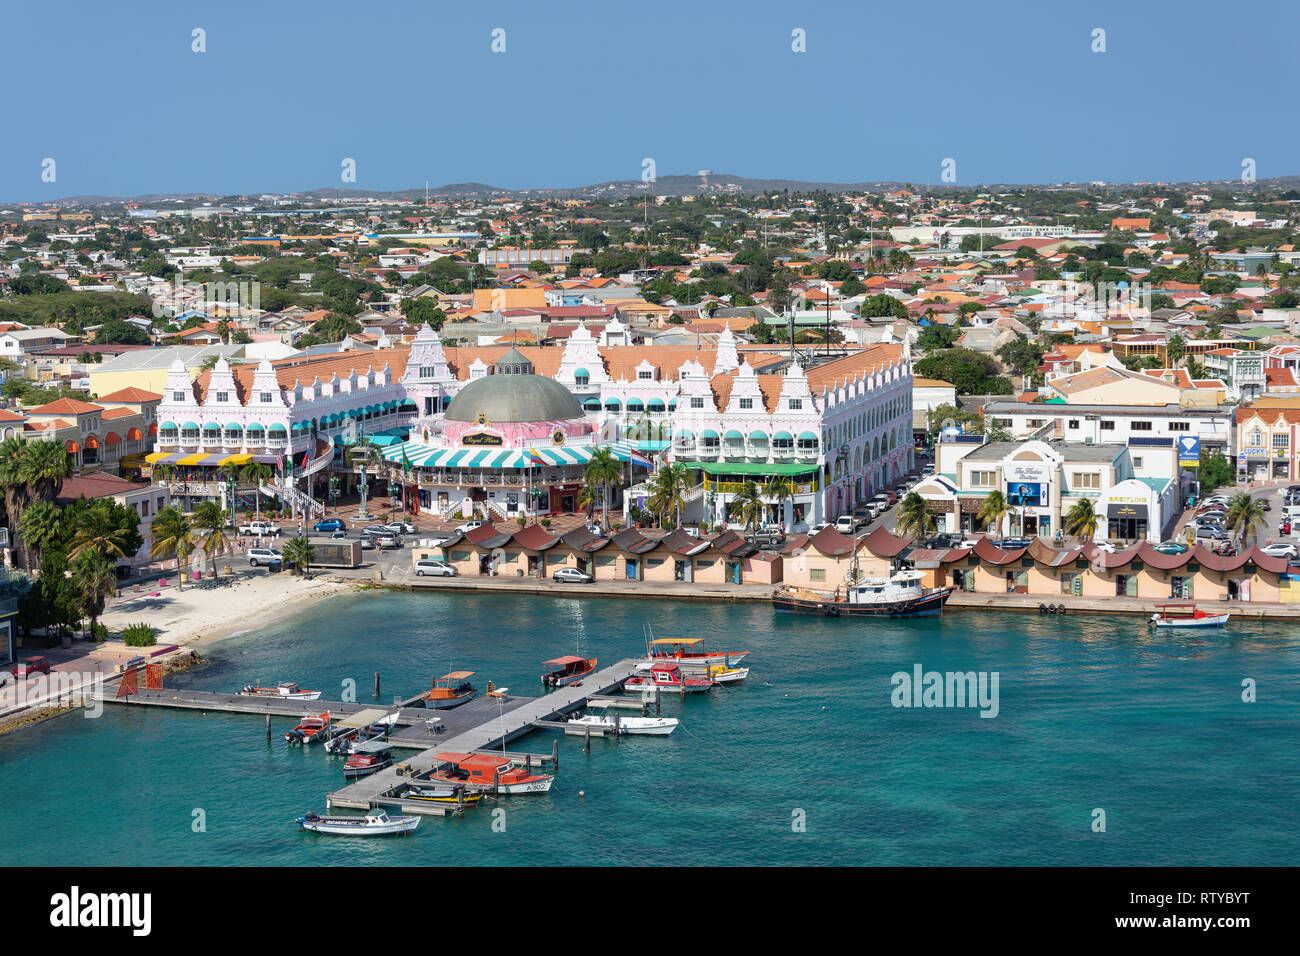 Vista de la ciudad y el puerto de cruceros, Oranjestad, Aruba, ABC islas de Sotavento, Antillas, Caribe Foto de stock